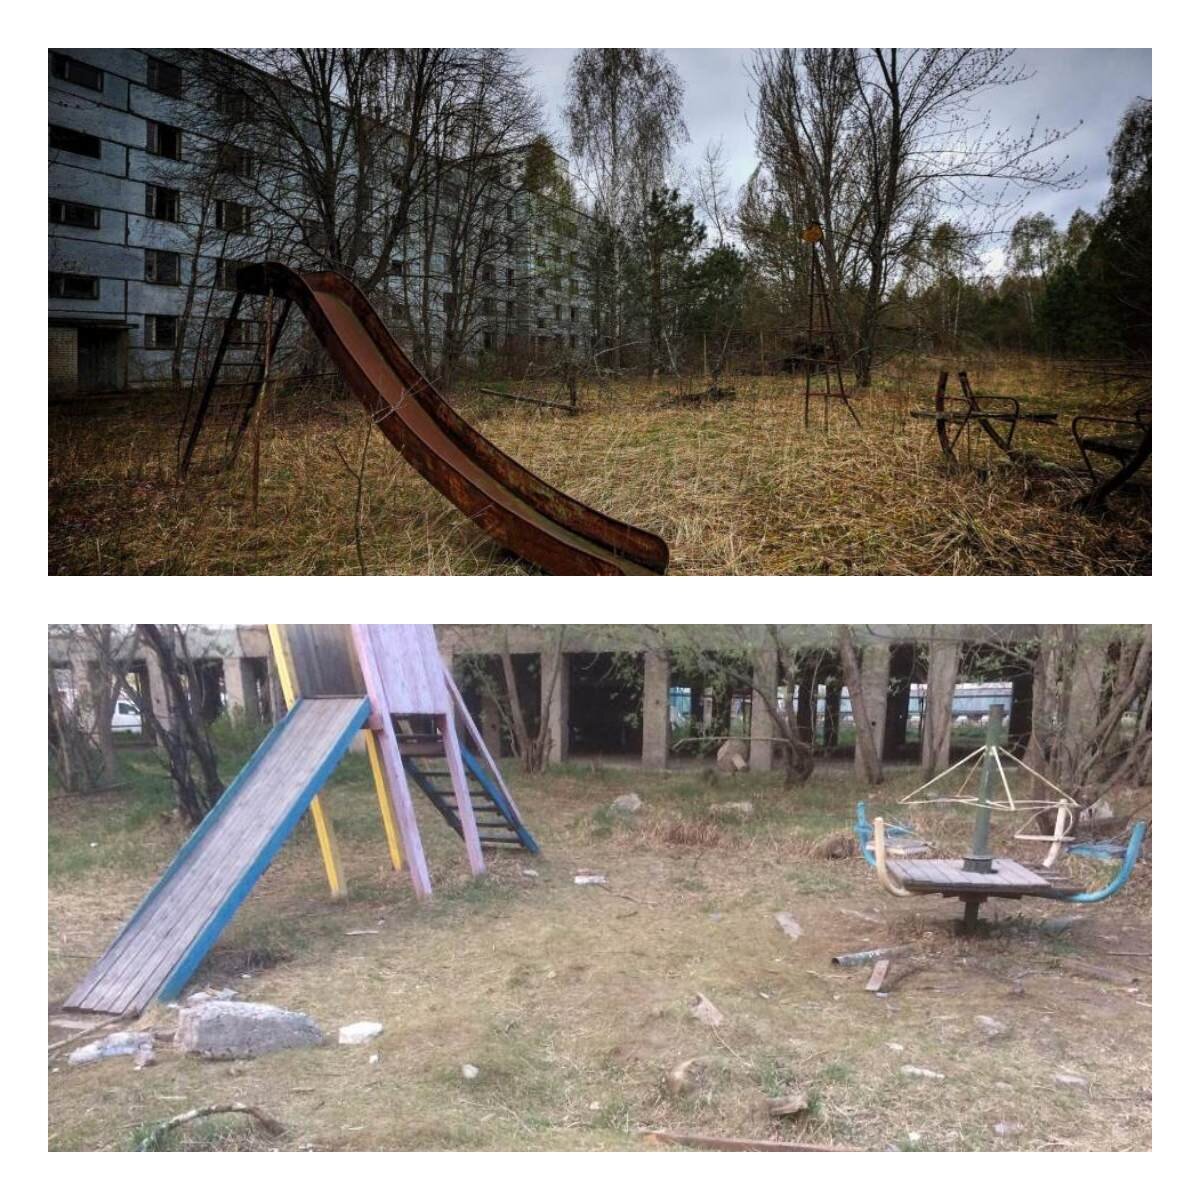 Жильцы пожаловались на пенсионера из Ростова, который сделал детскую площадку во дворе дома